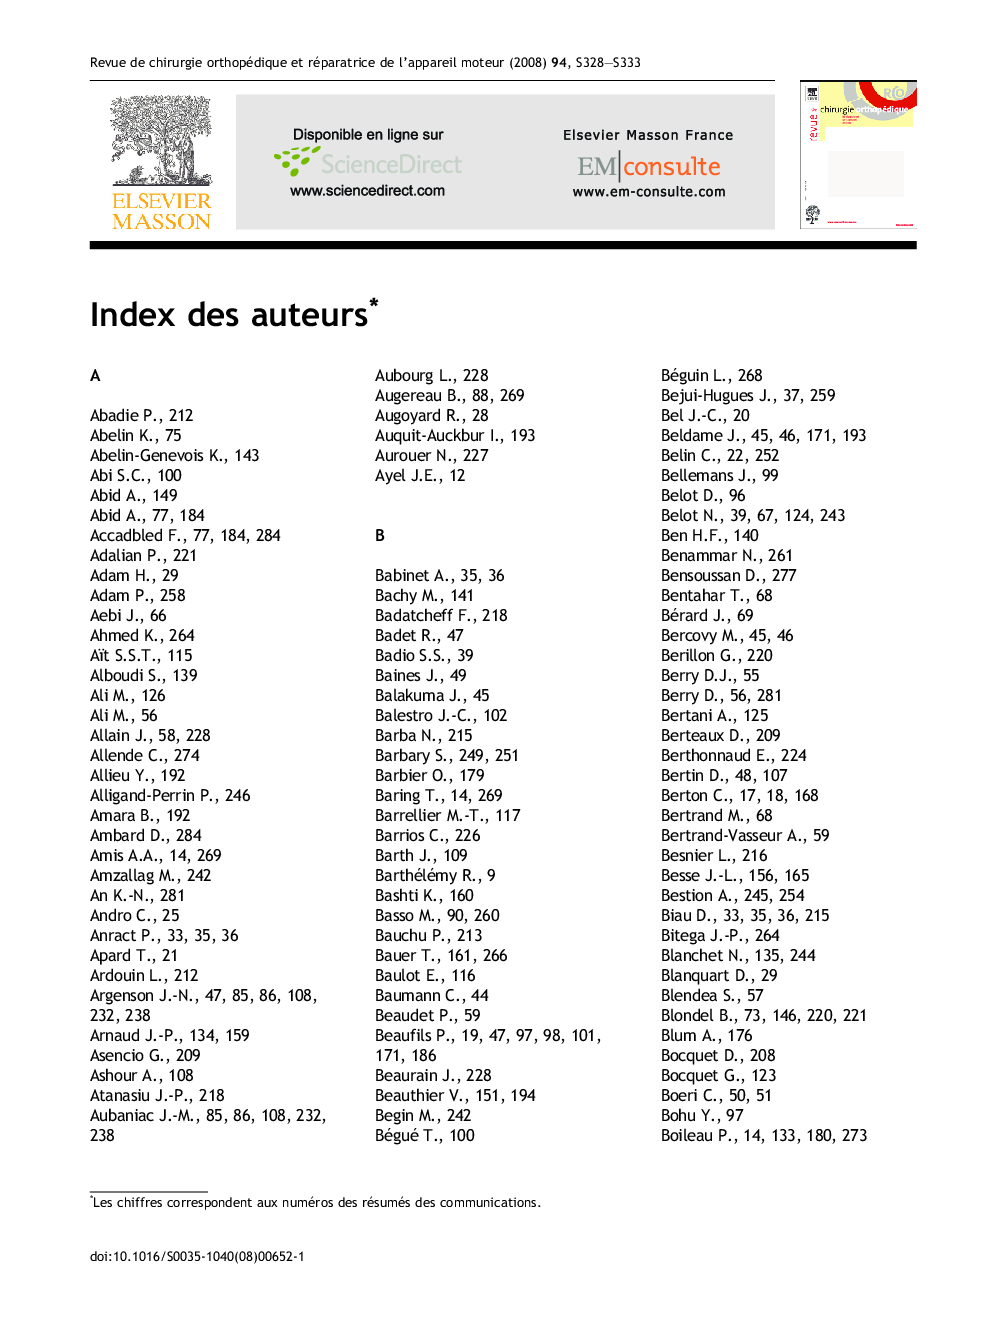 Index des auteurs